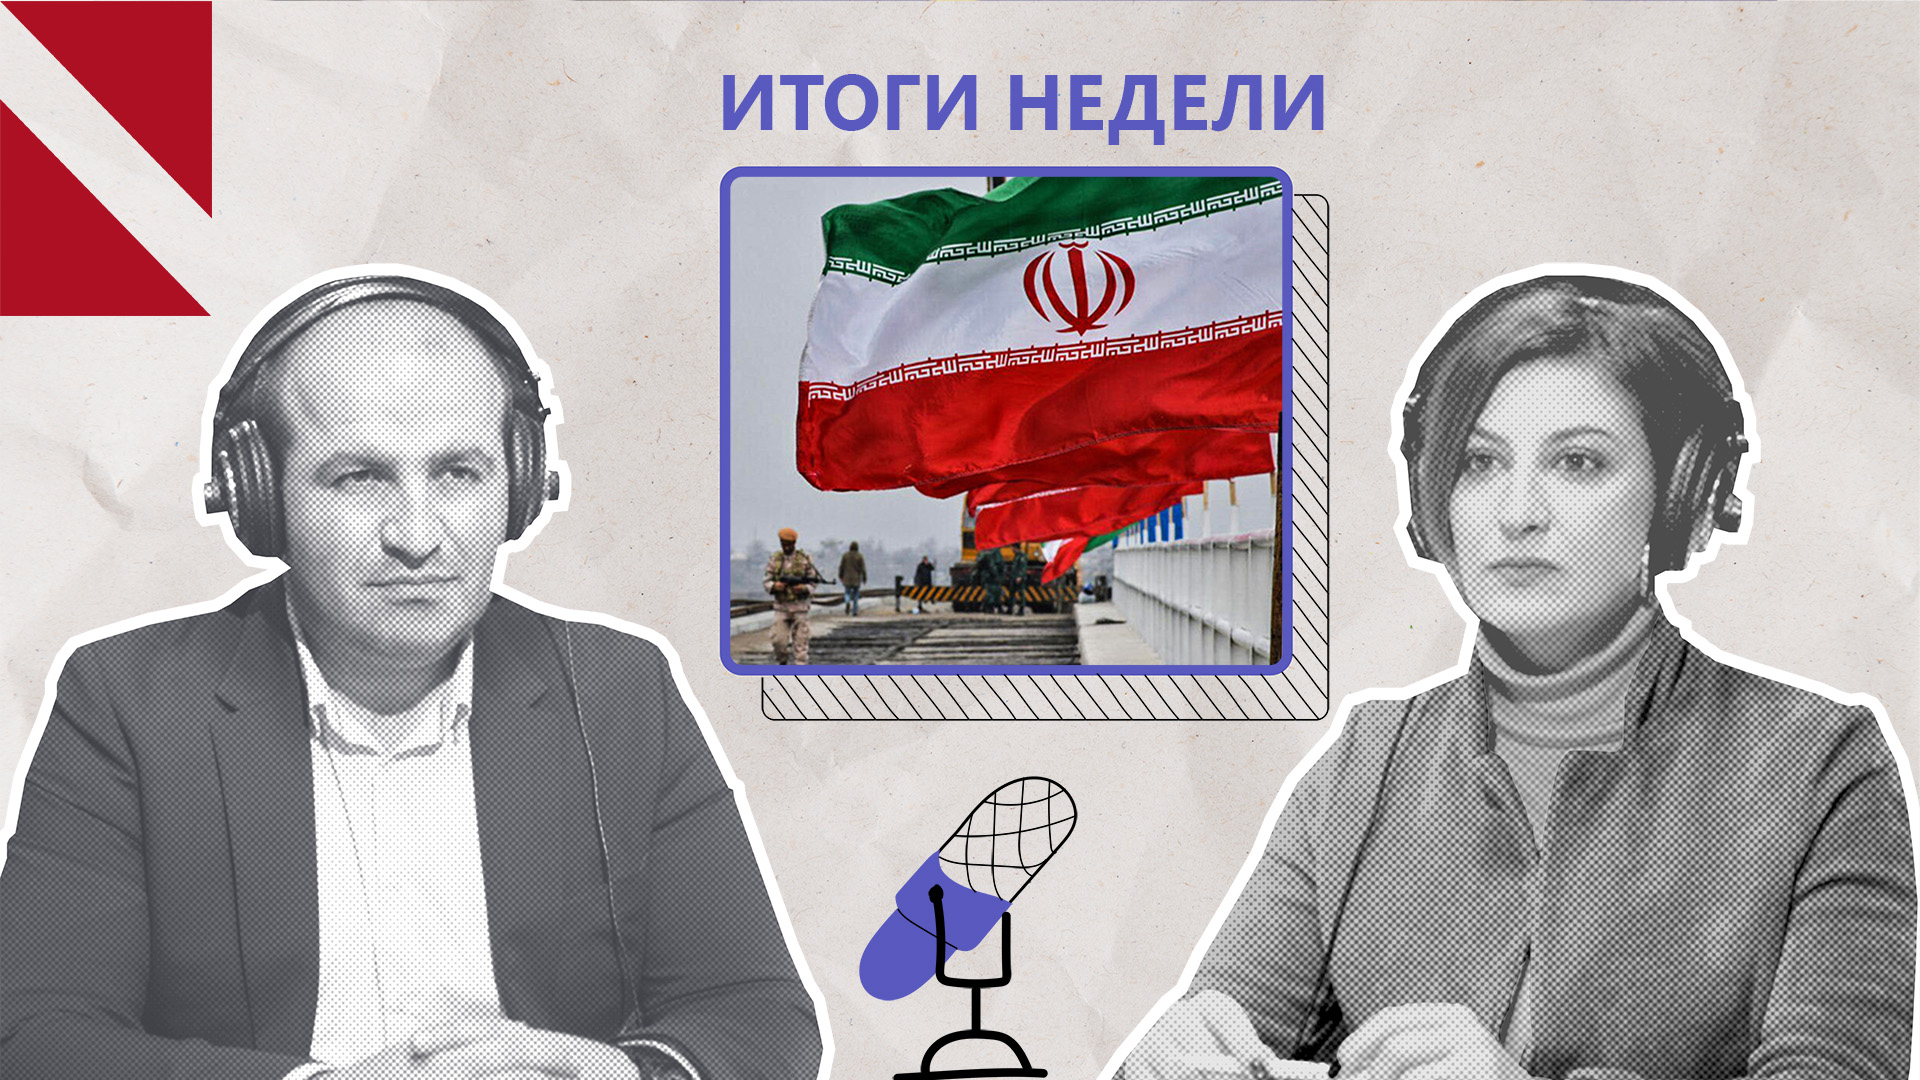 Заявления посла Ирана в студии CivilNet встревожили Баку. Итоги недели